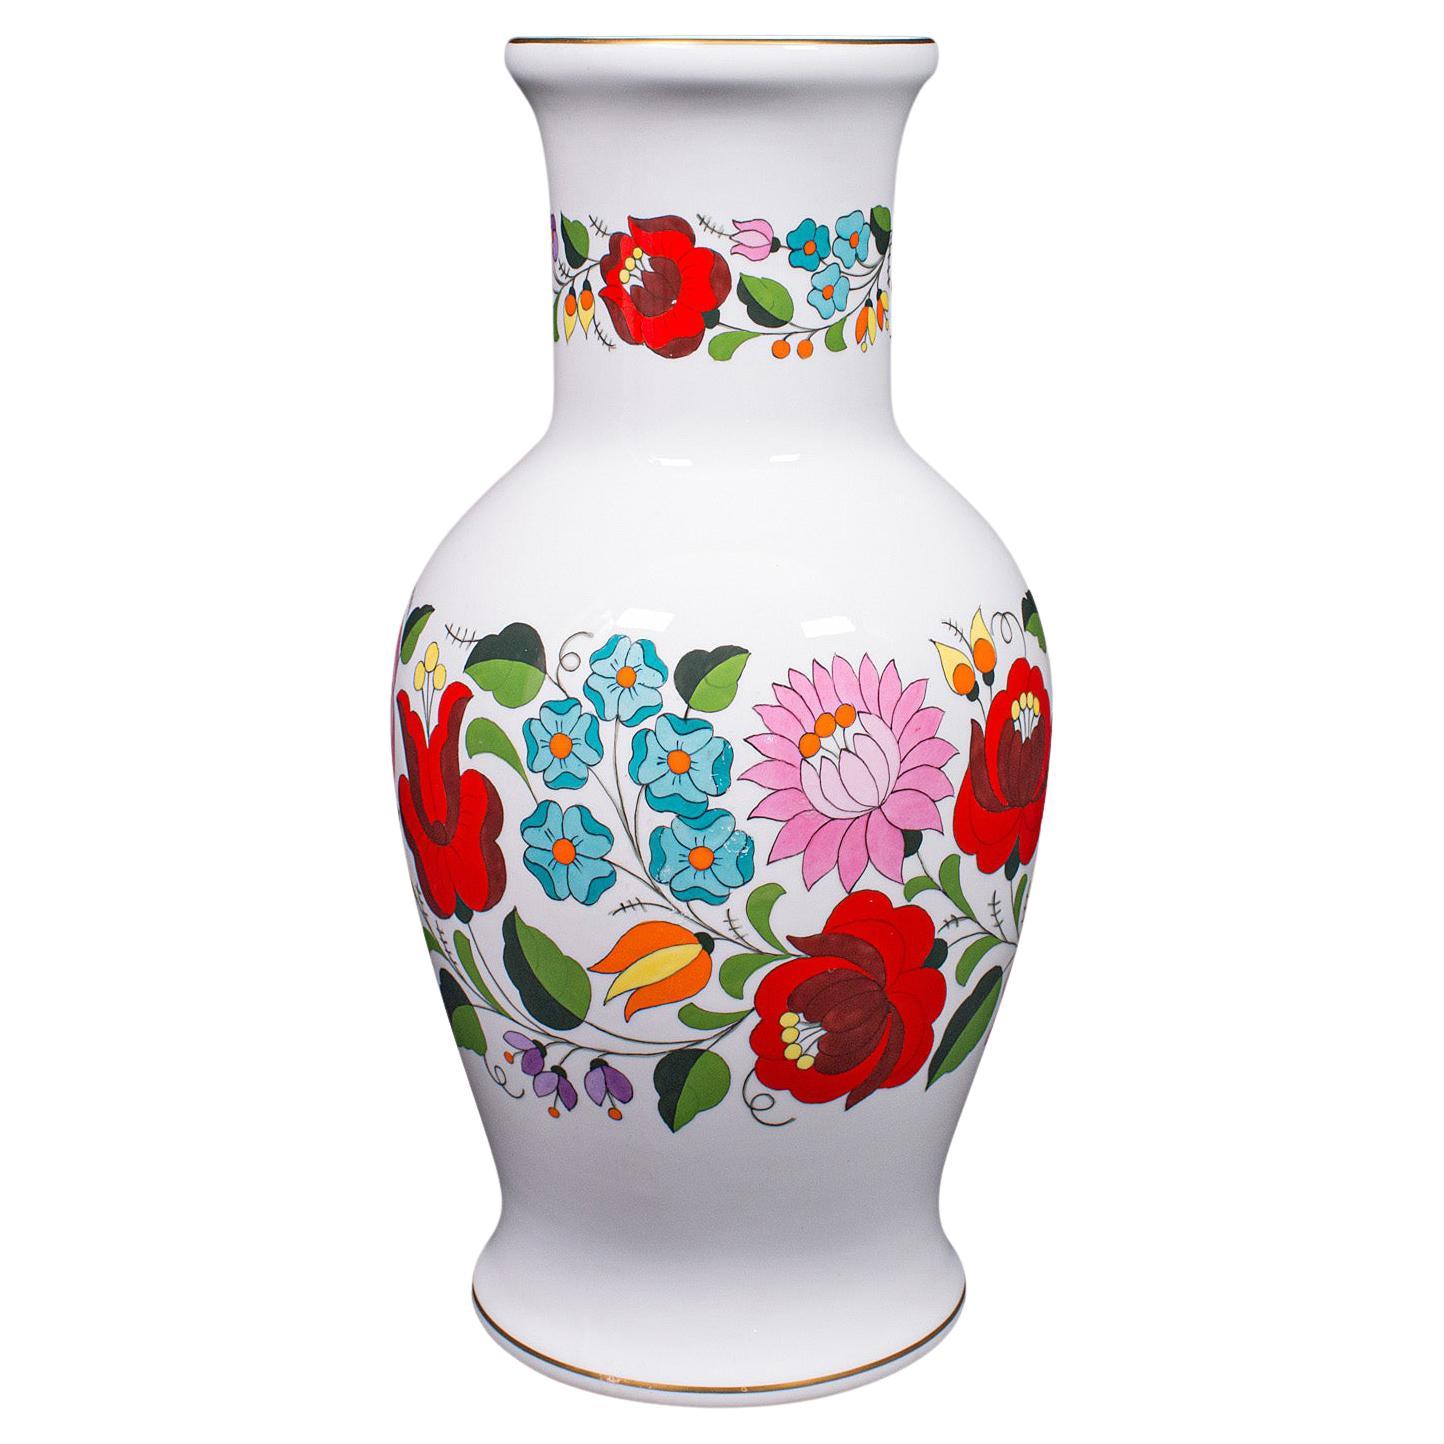 Vintage Flower Vases - 87 For Sale on 1stDibs | antique flower 